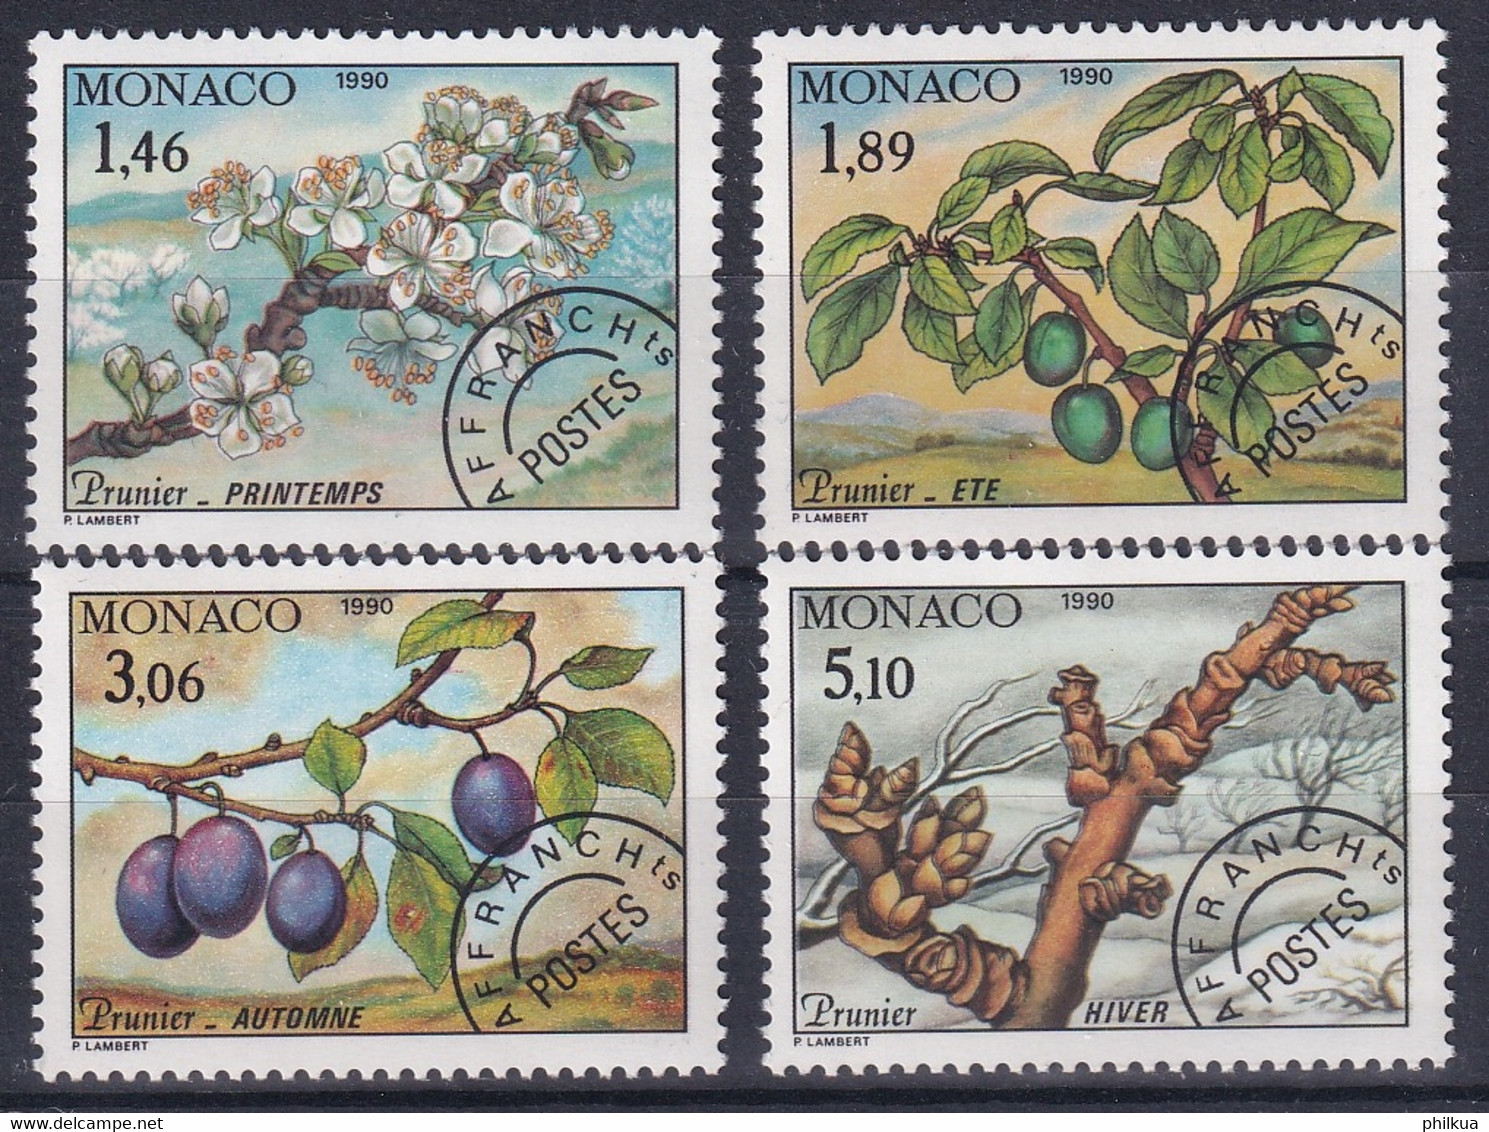 MiNr. 1980 - 1983  Monaco1990, 11. Sept. Freimarken Mit Vorausentwertung: Die Vier Jahreszeiten - Used Stamps